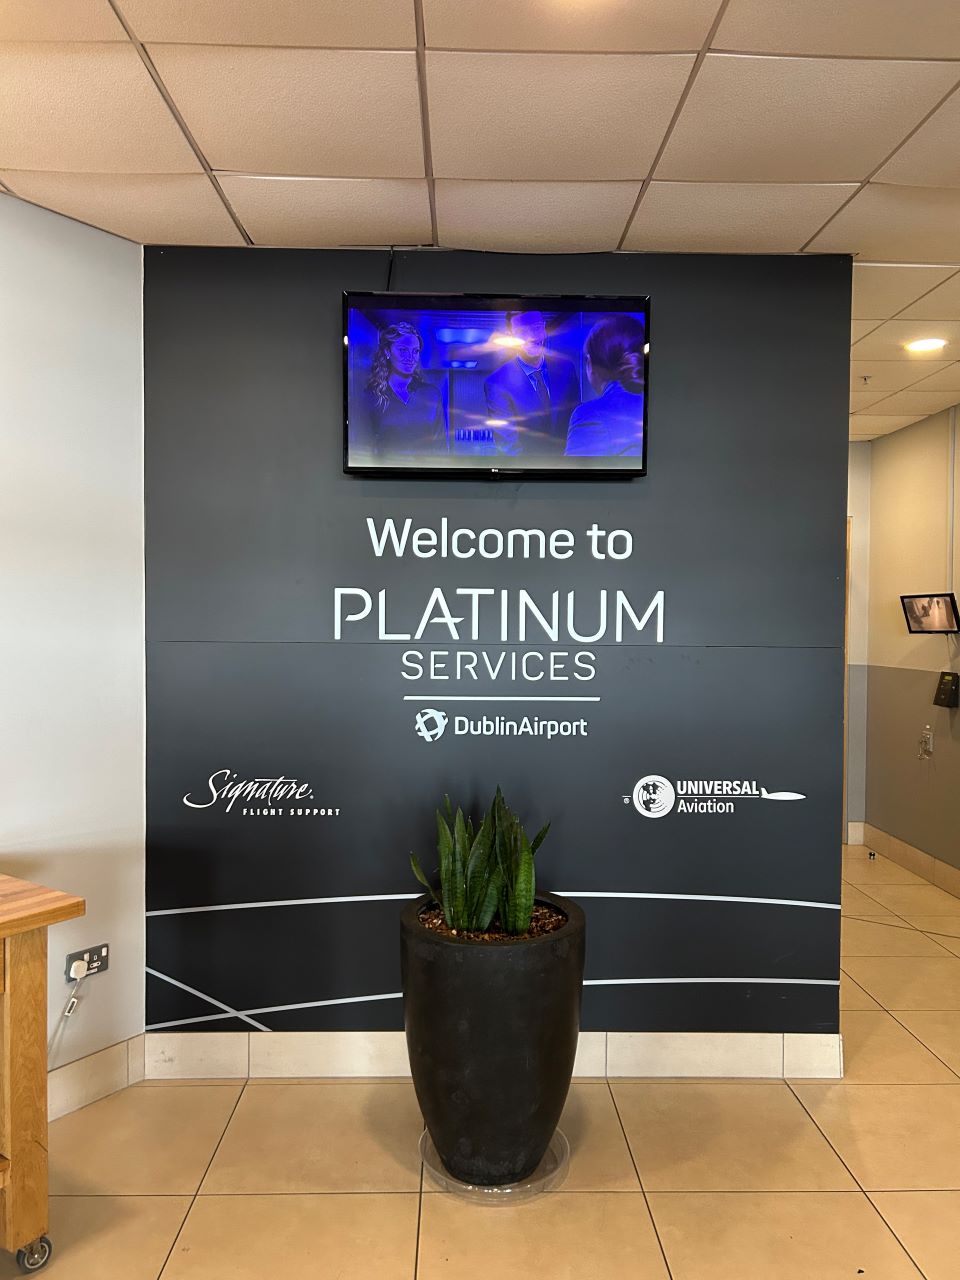 Platinum Services at Dublin Airport